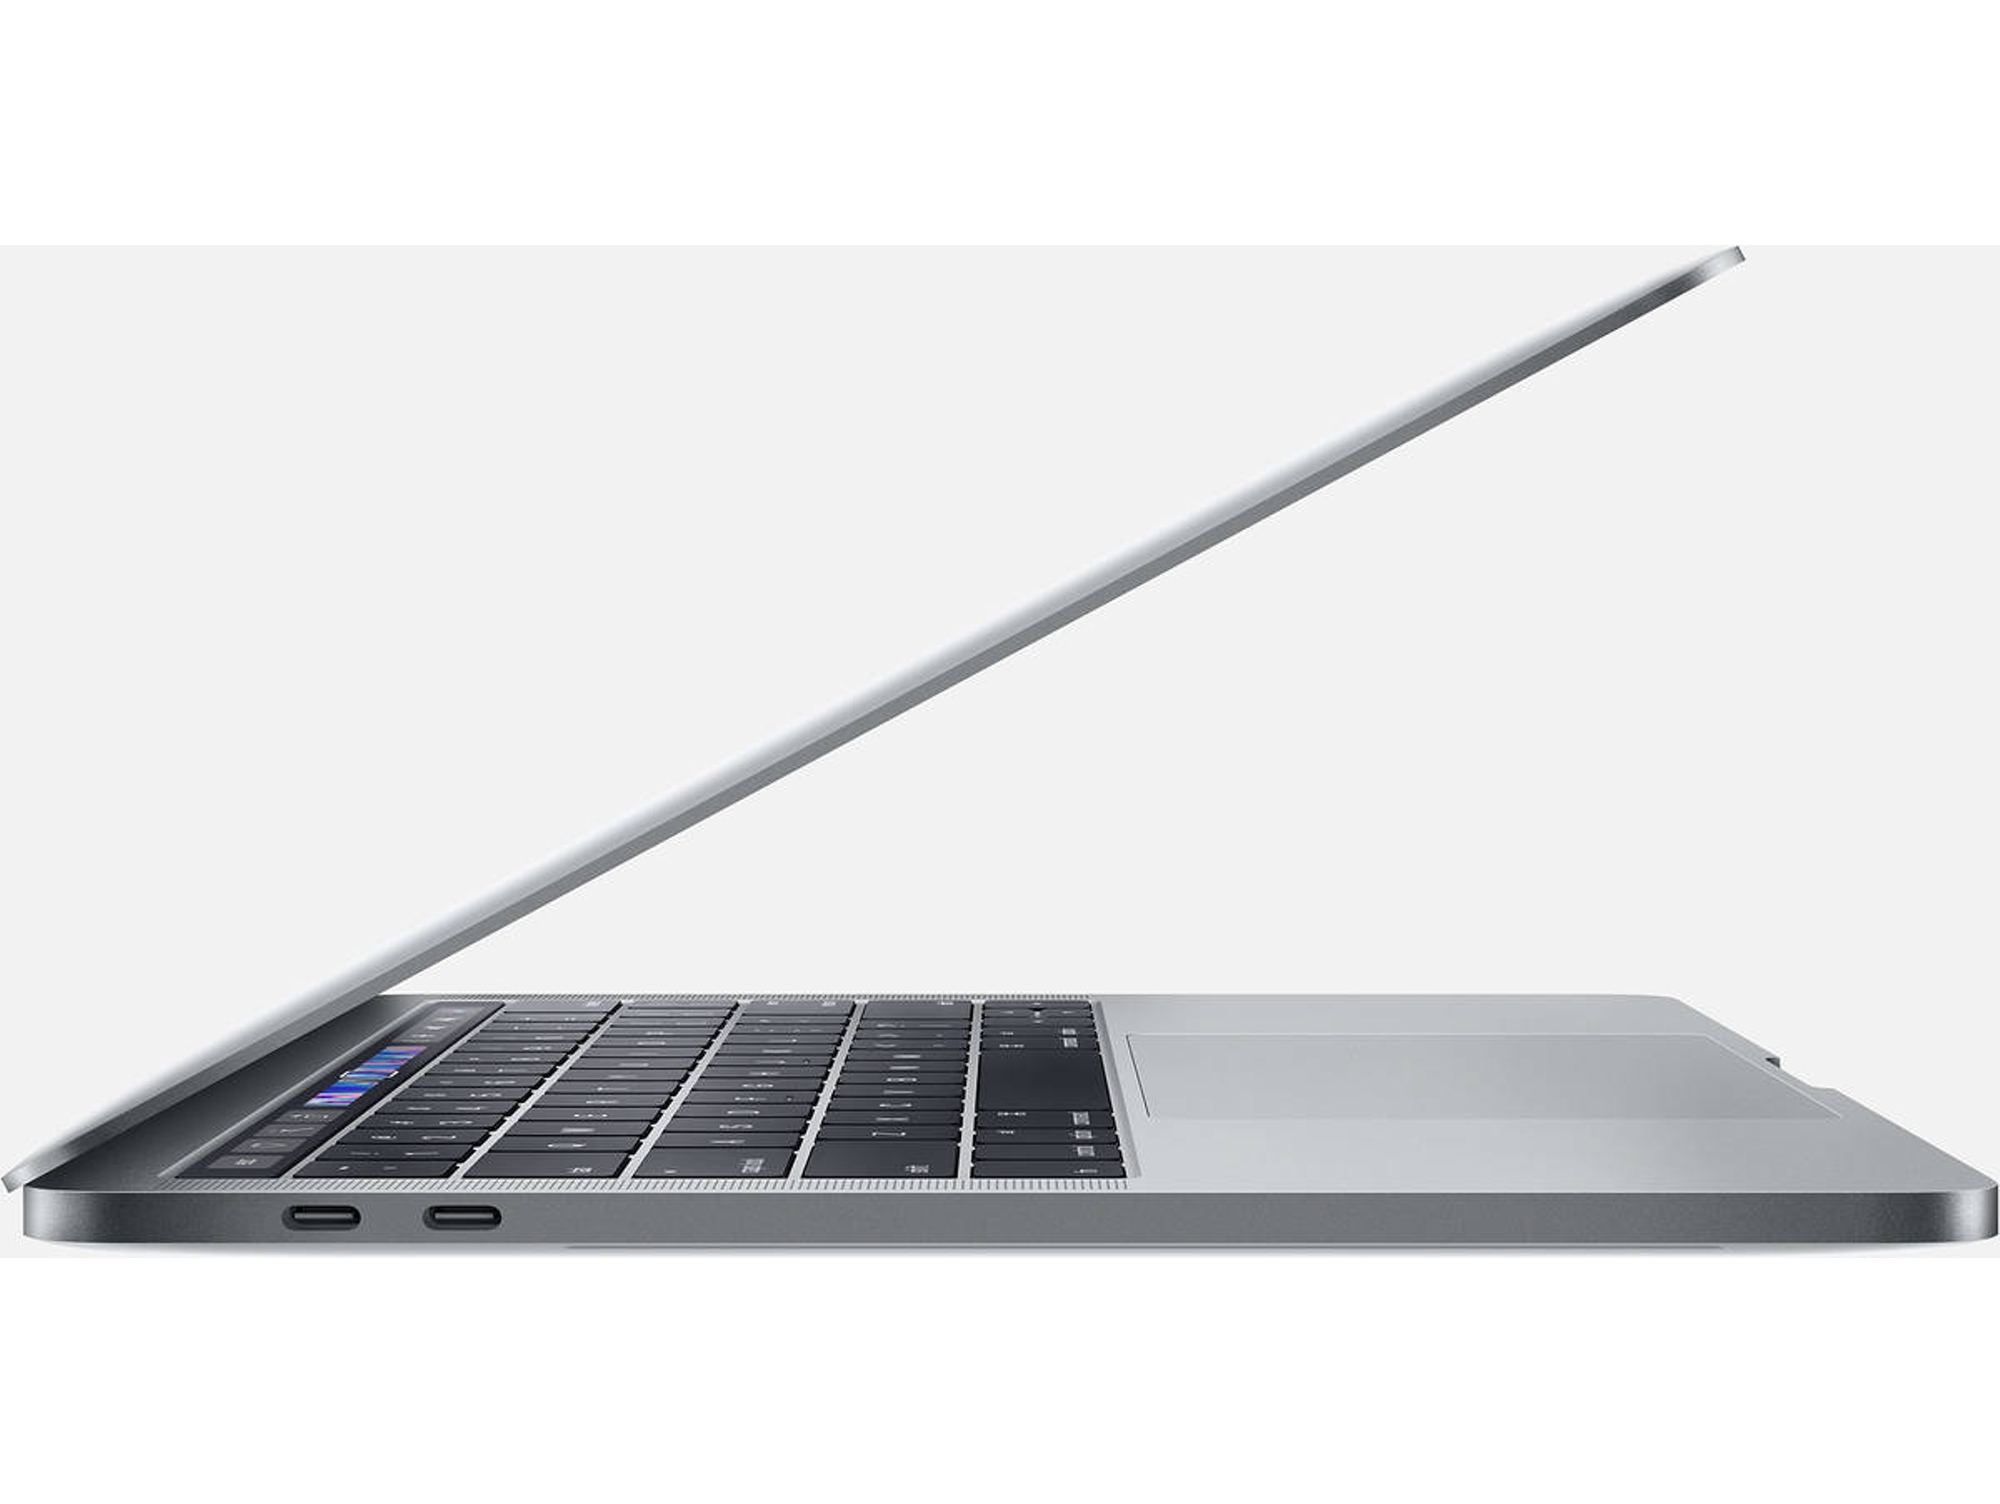 afeitado segunda mano Expresamente MacBook Pro 2019 APPLE Gris Espacial - MUHP2Y/A (13.3'' - Intel Core i5 -  RAM: 8 GB - 256